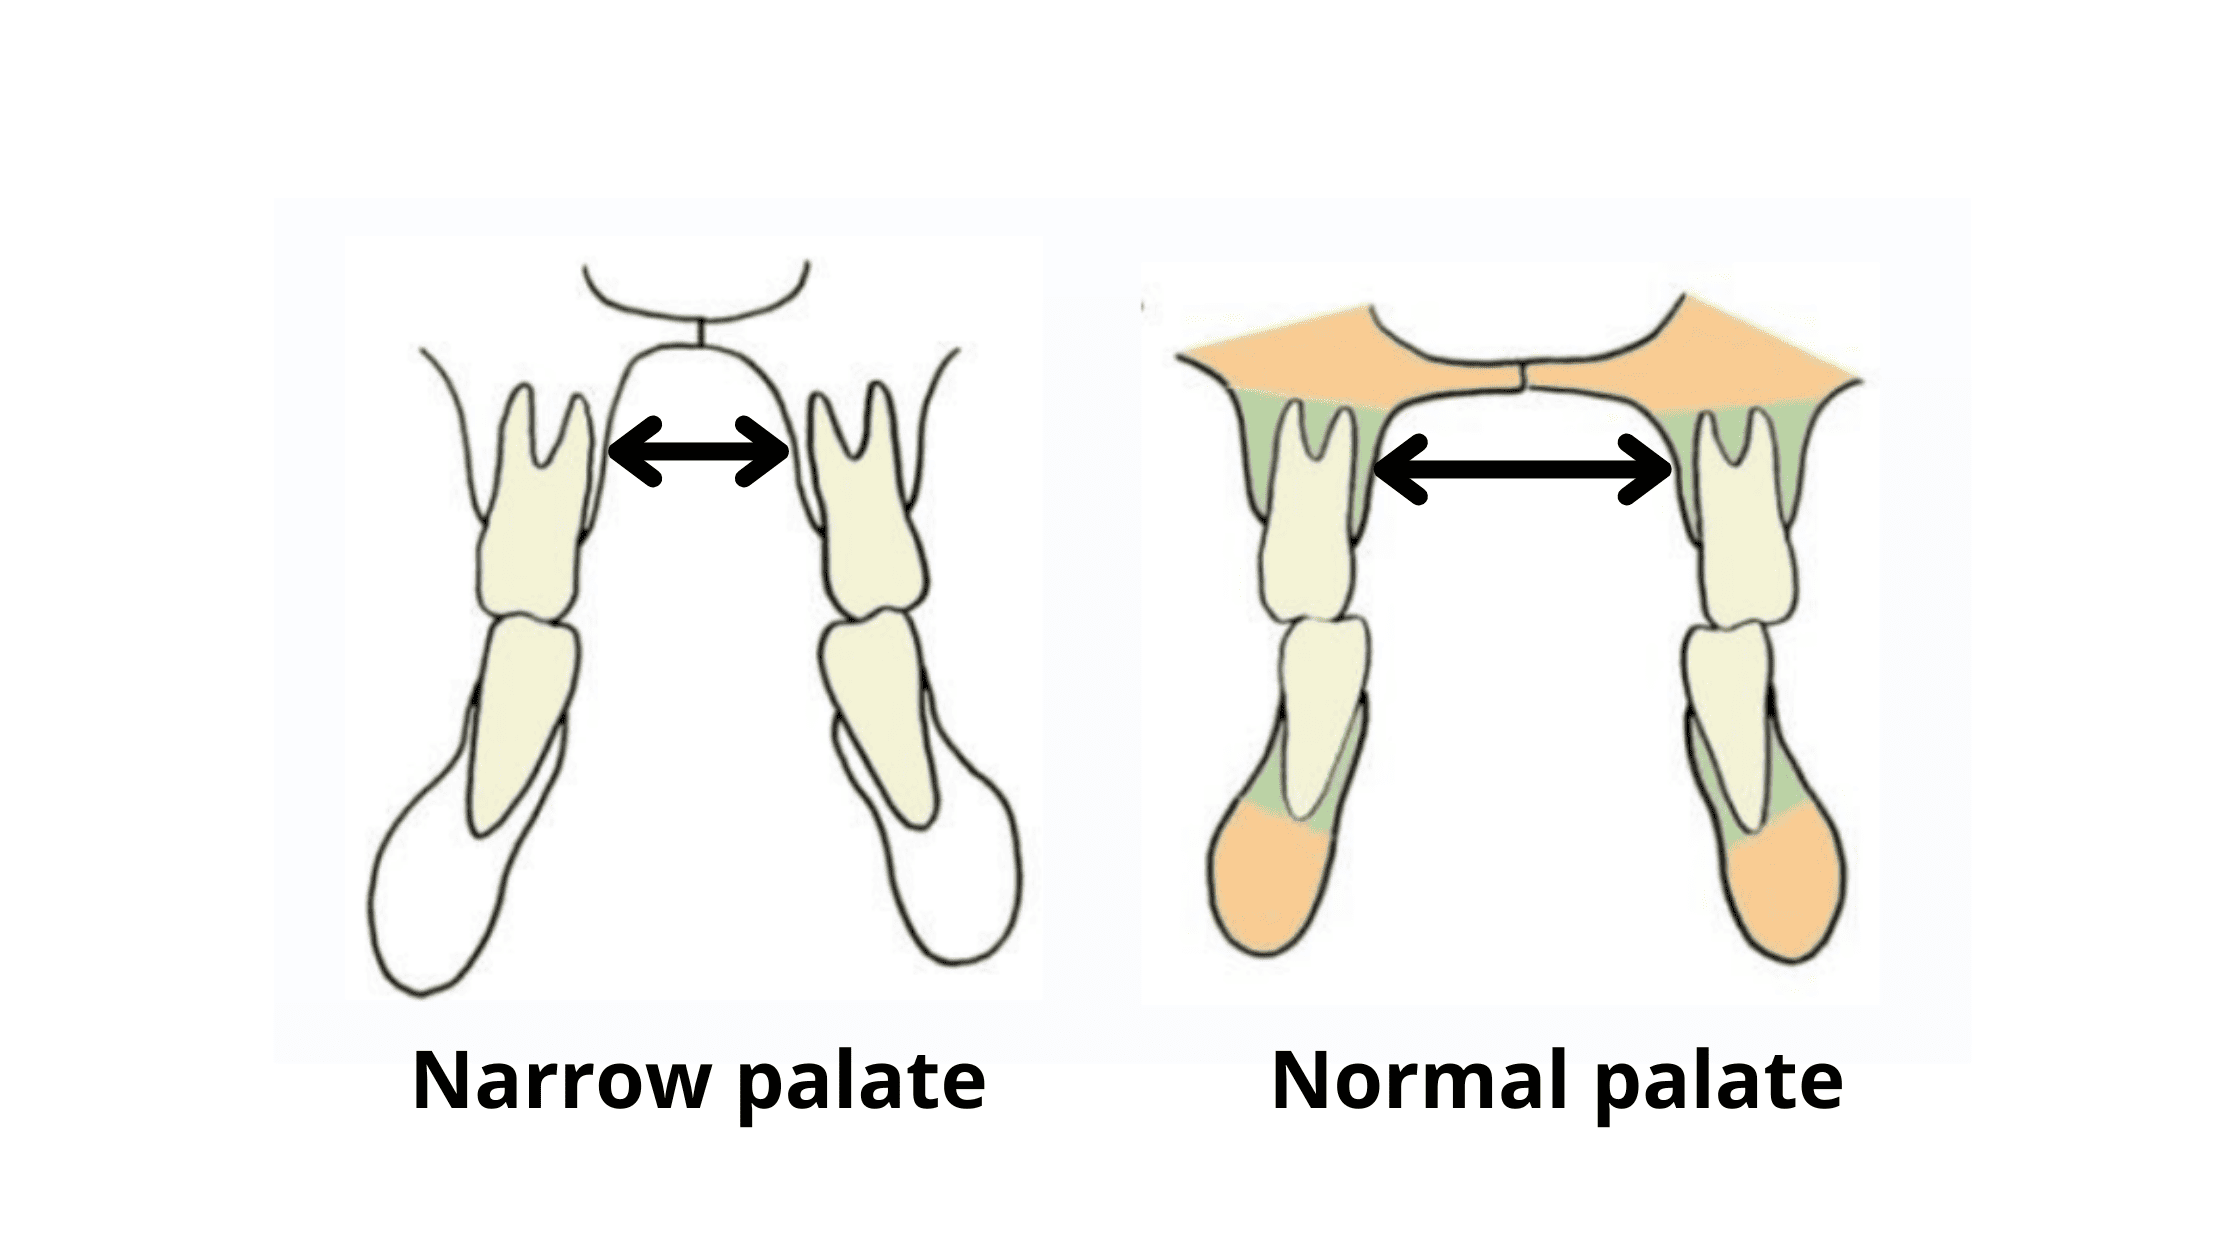 Narrow palate vs. Normal palate